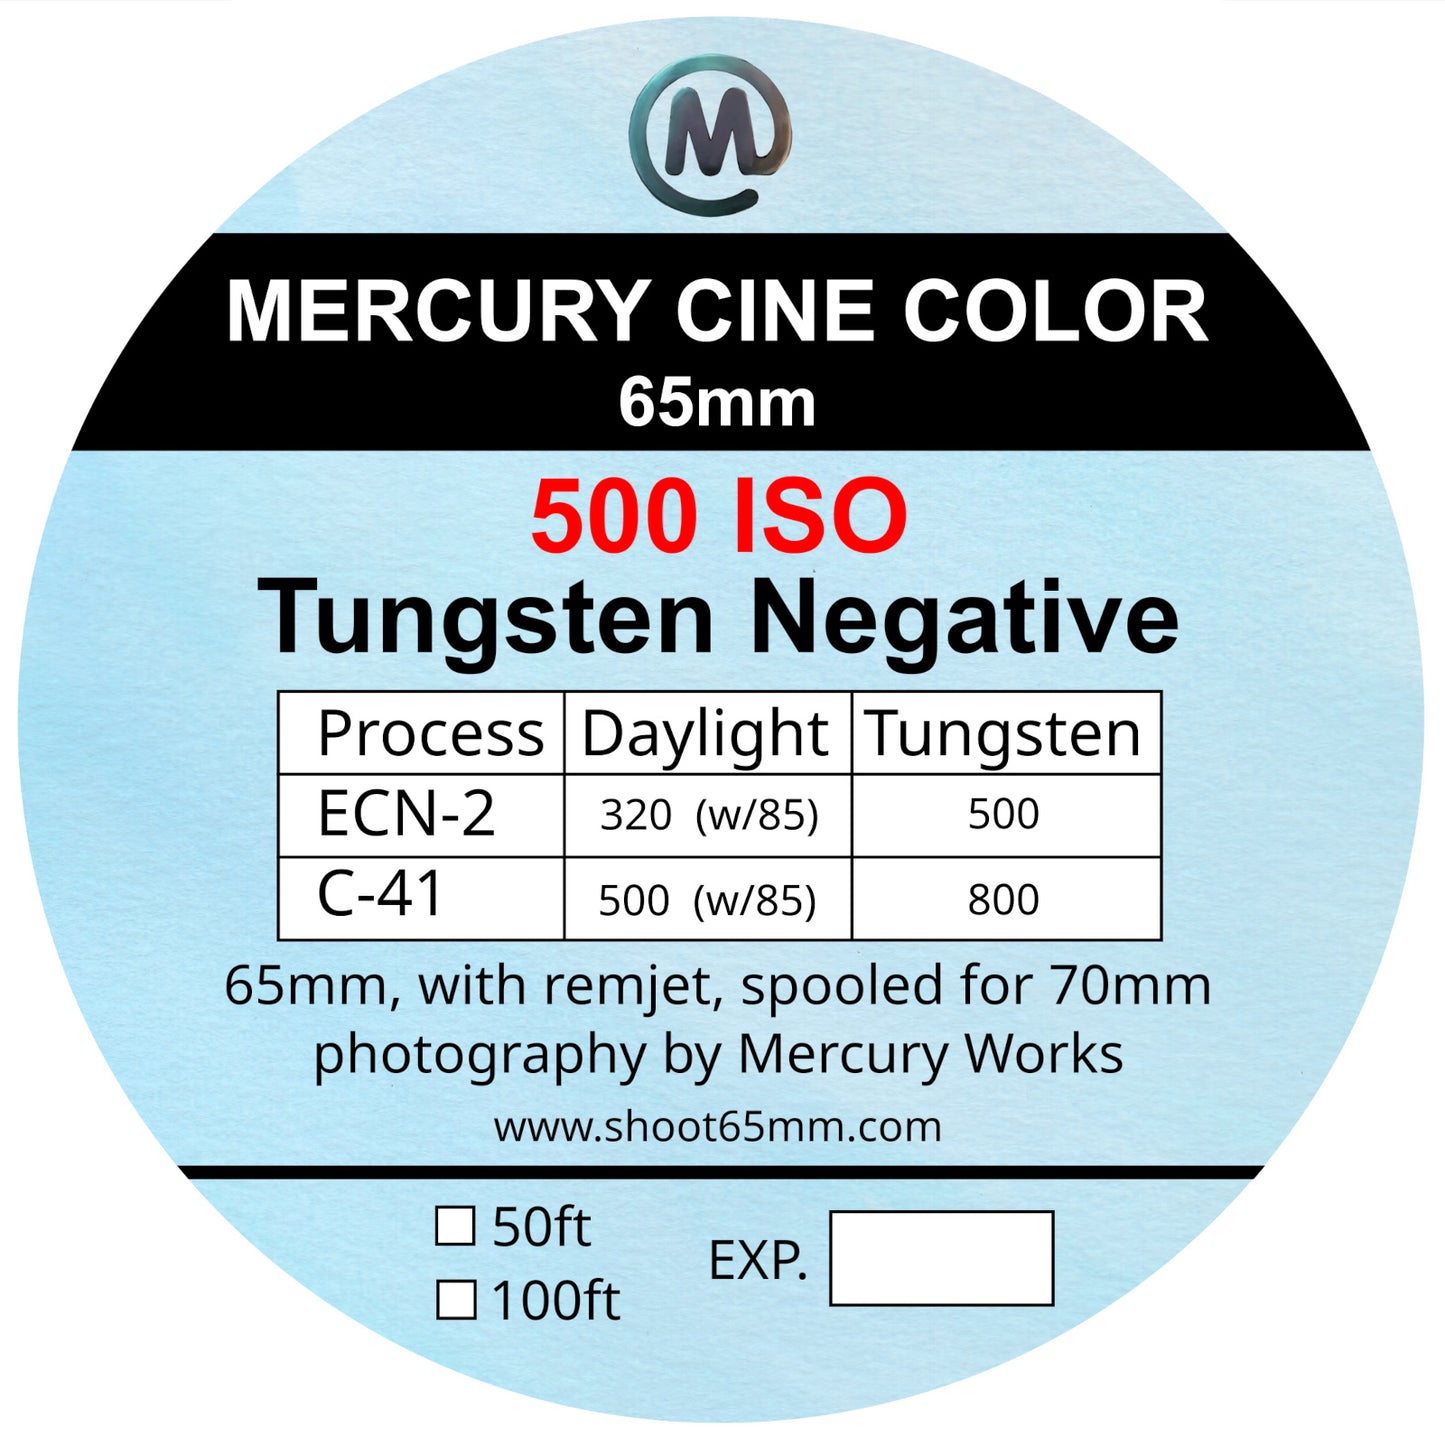 Mercury Cine Color 500 - 65mm film